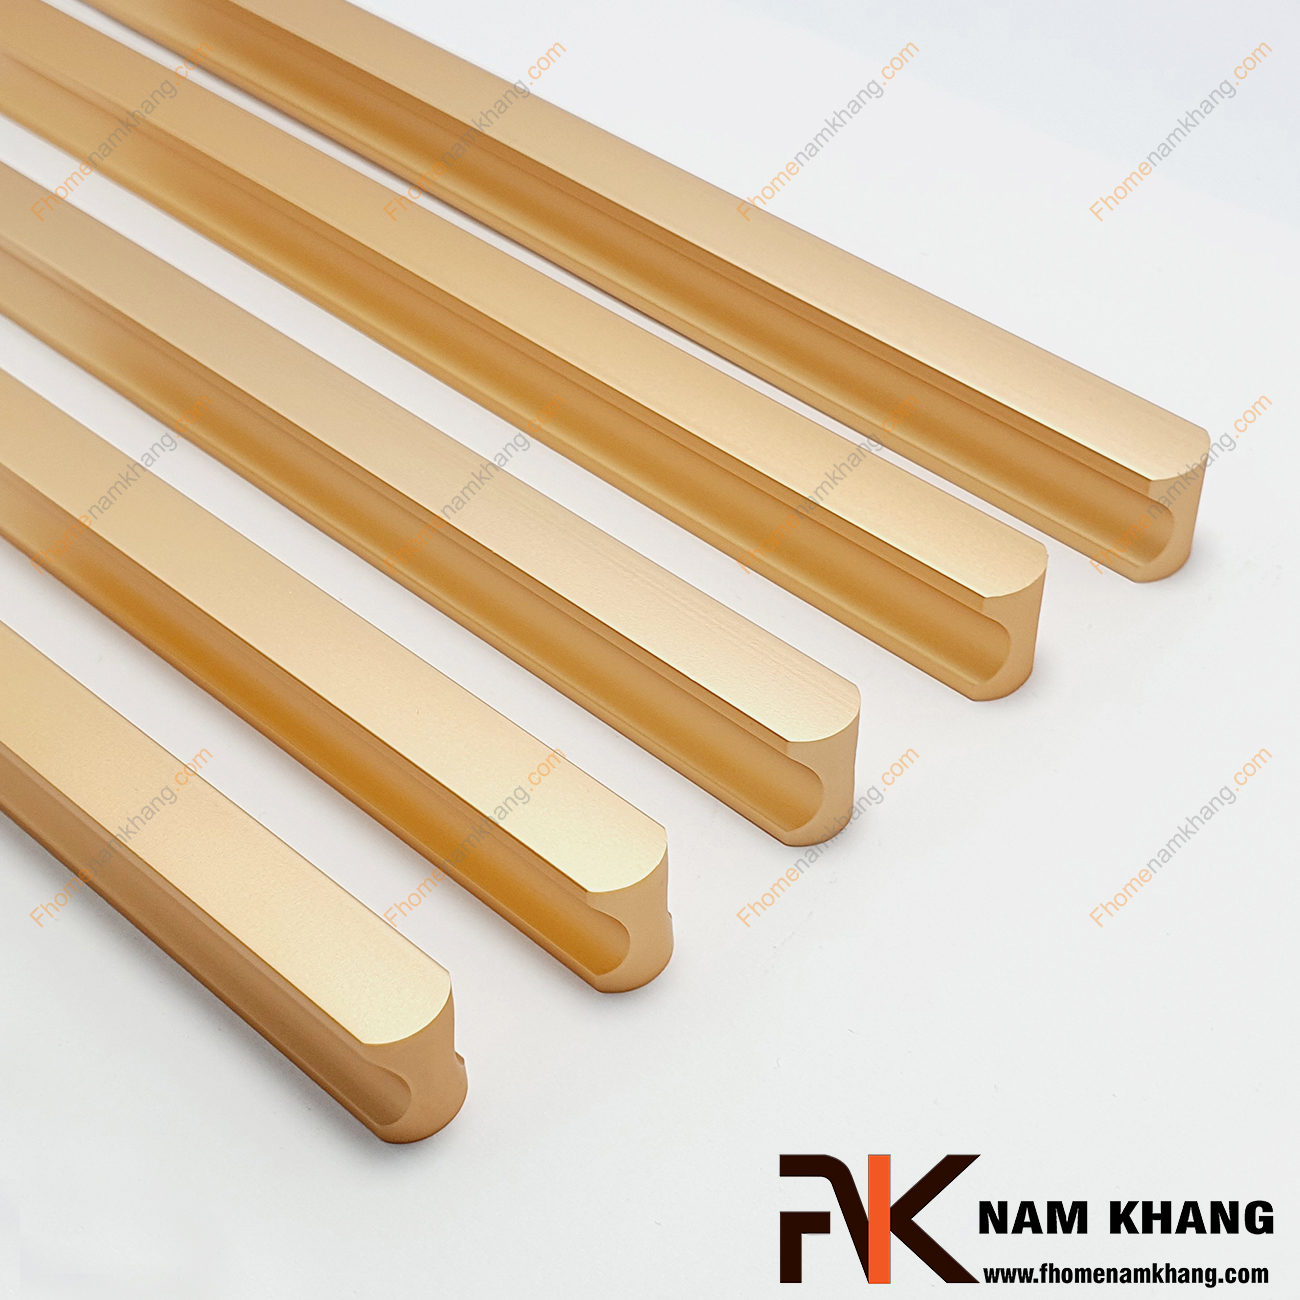 Tay nắm tủ dạng thanh dài nguyên khối màu vàng mờ NK001-VB dạng tay nắm tủ thanh dài nguyên khối được sản xuất từ chất liệu hợp kim cao cấp và xử lý bề mặt kỹ thuật cao.